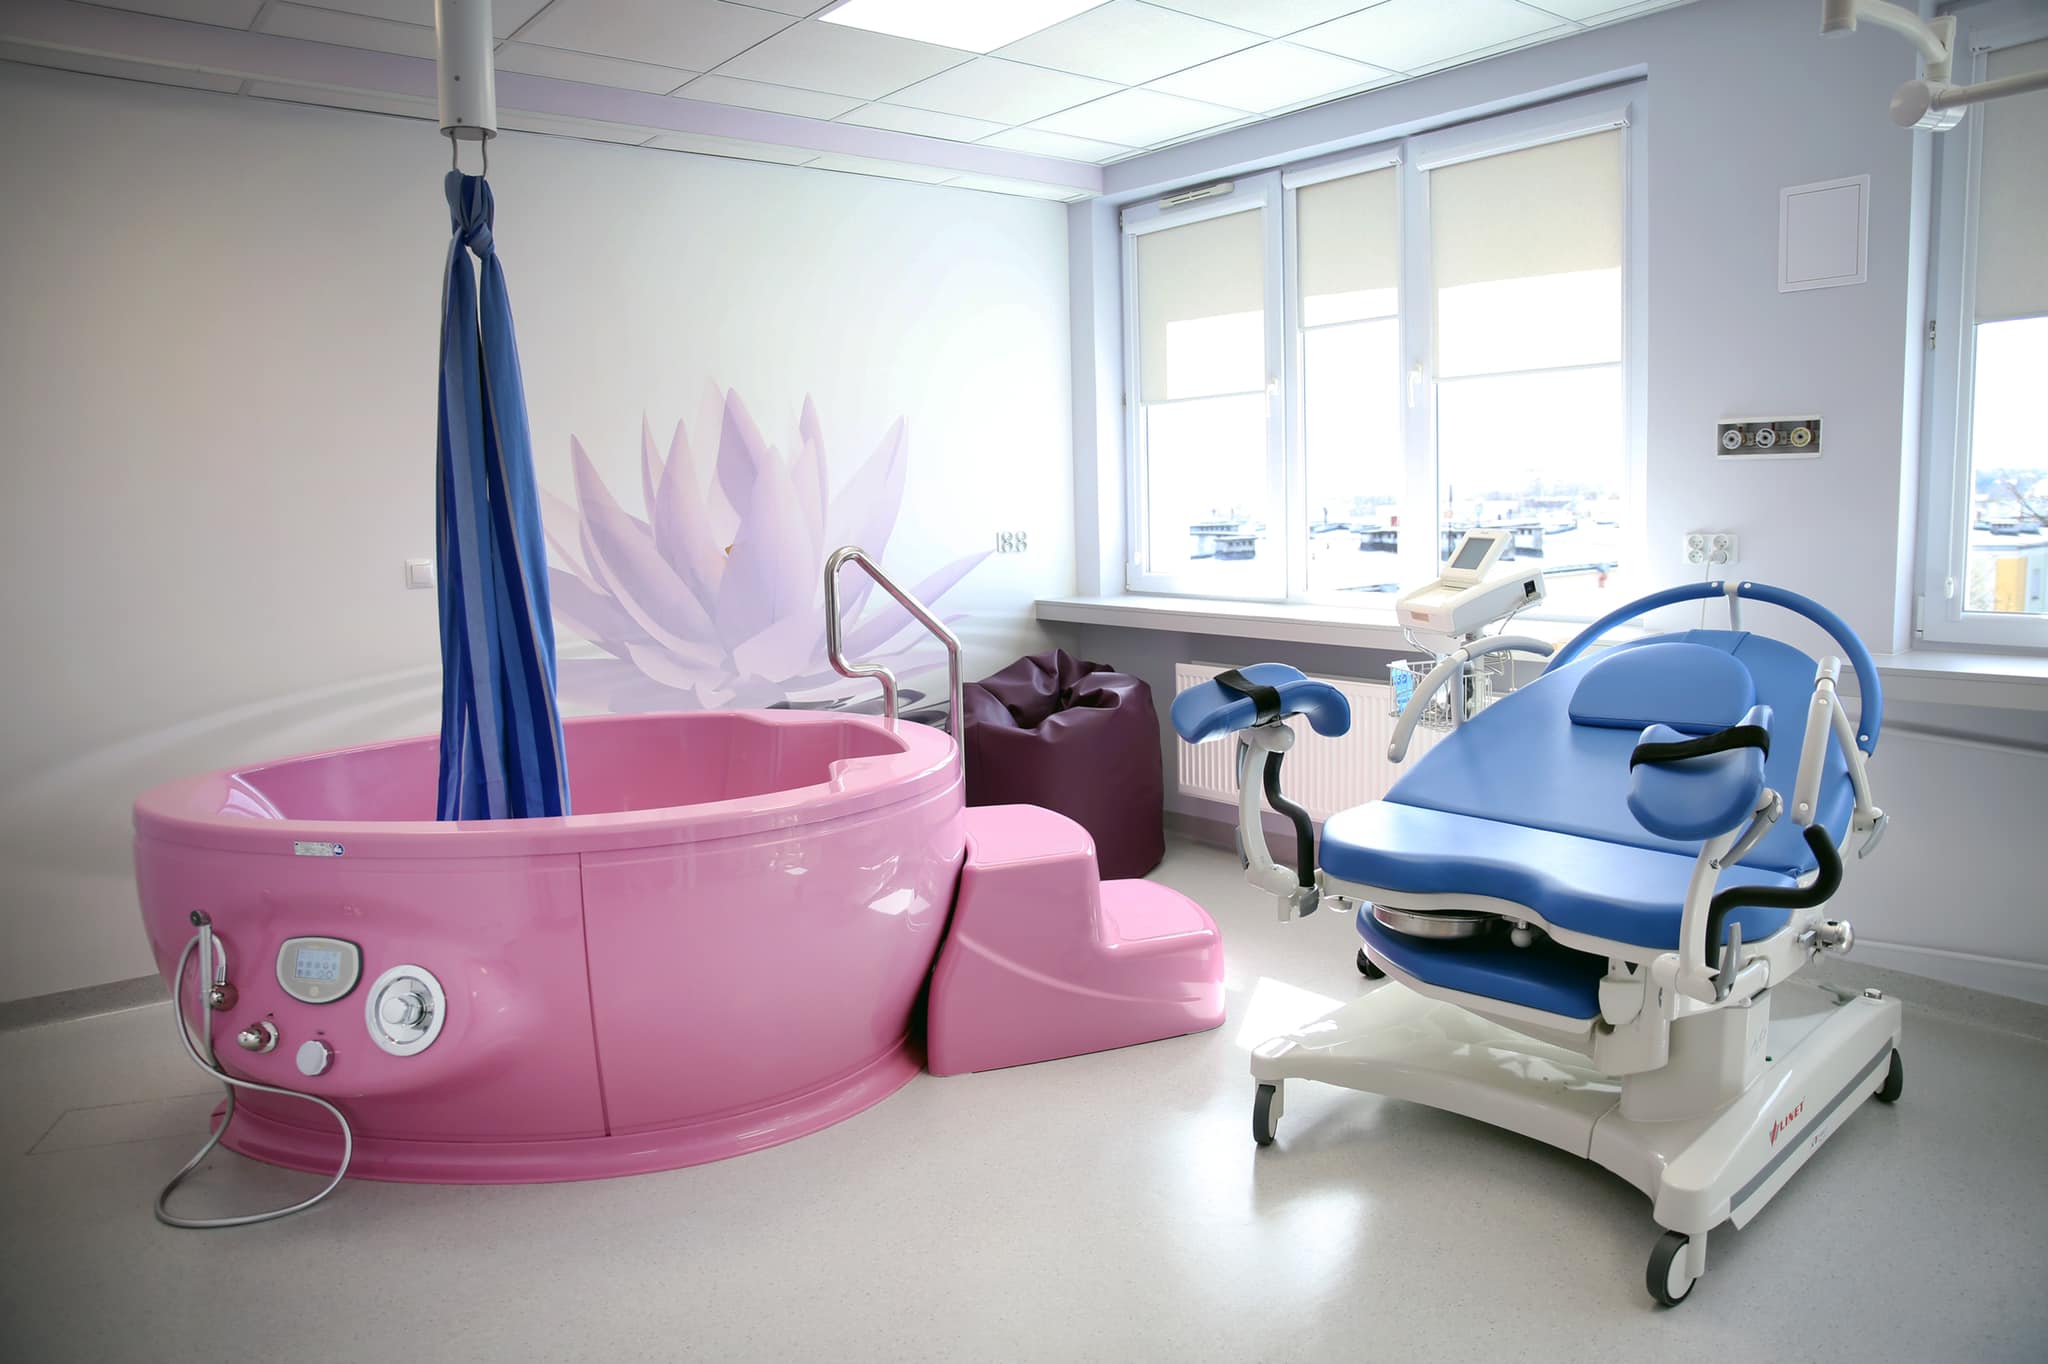 W świdnickim szpitalu powstała nowa porodówka. Mamy powinny być zadowolone z komfortowych sal (zdjęcia)